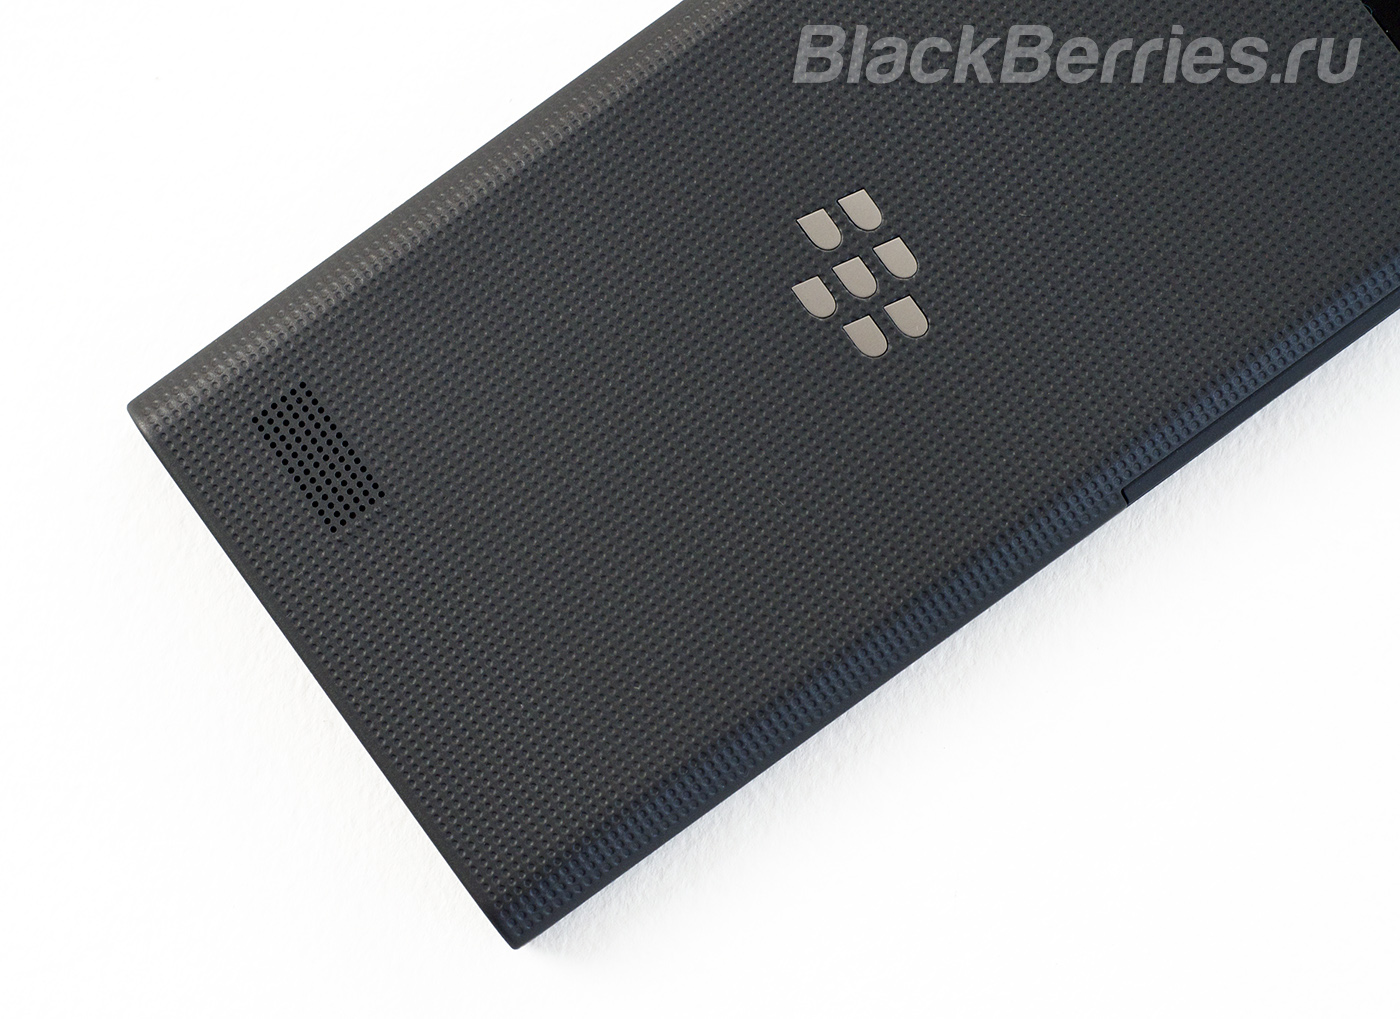 BlackBerry-Leap-16